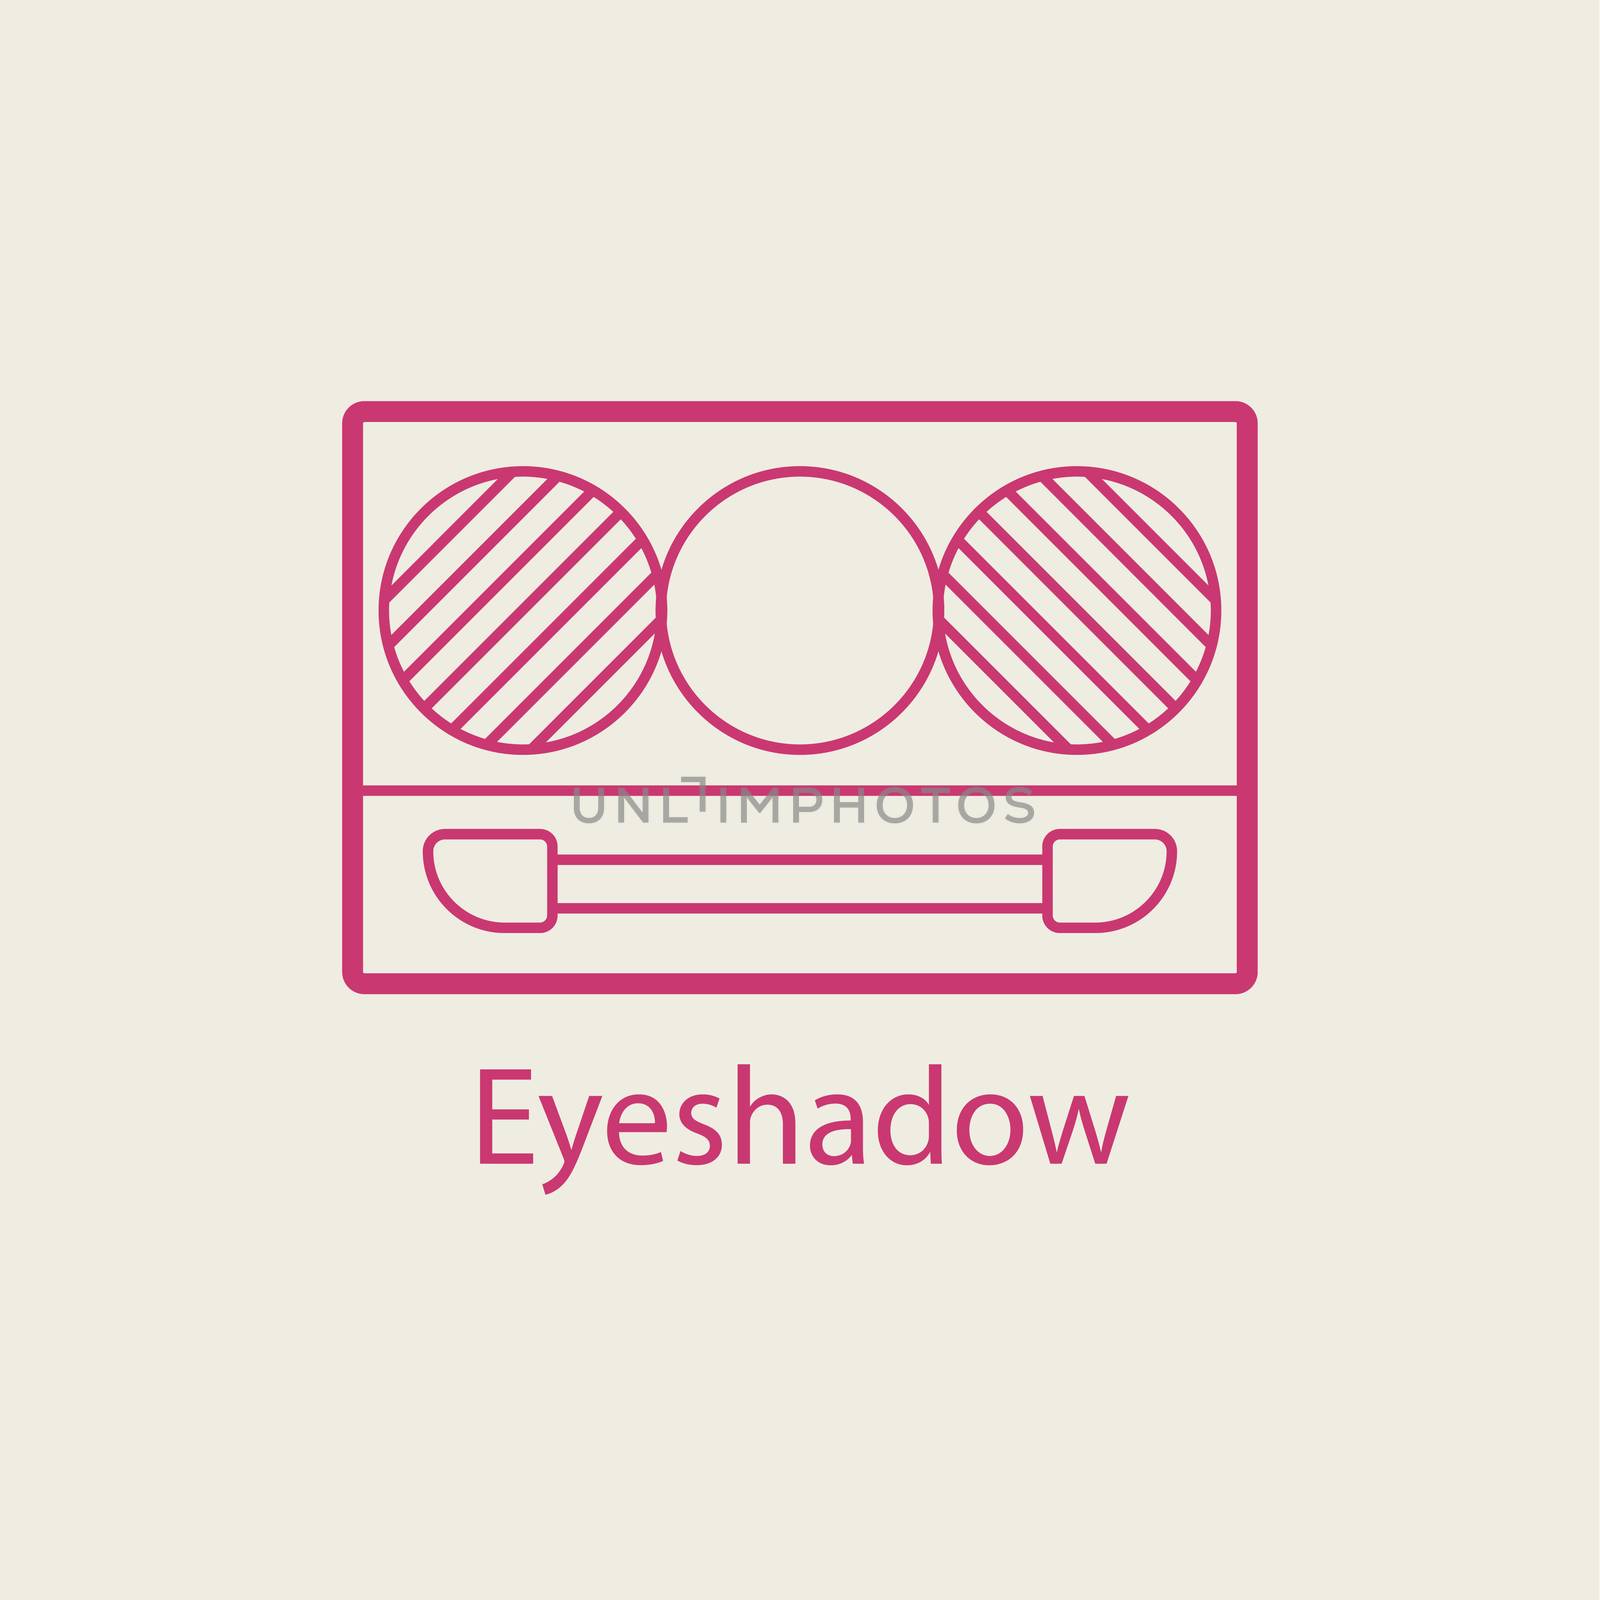  cosmetic eyeshadow thin line icon. by Elena_Garder